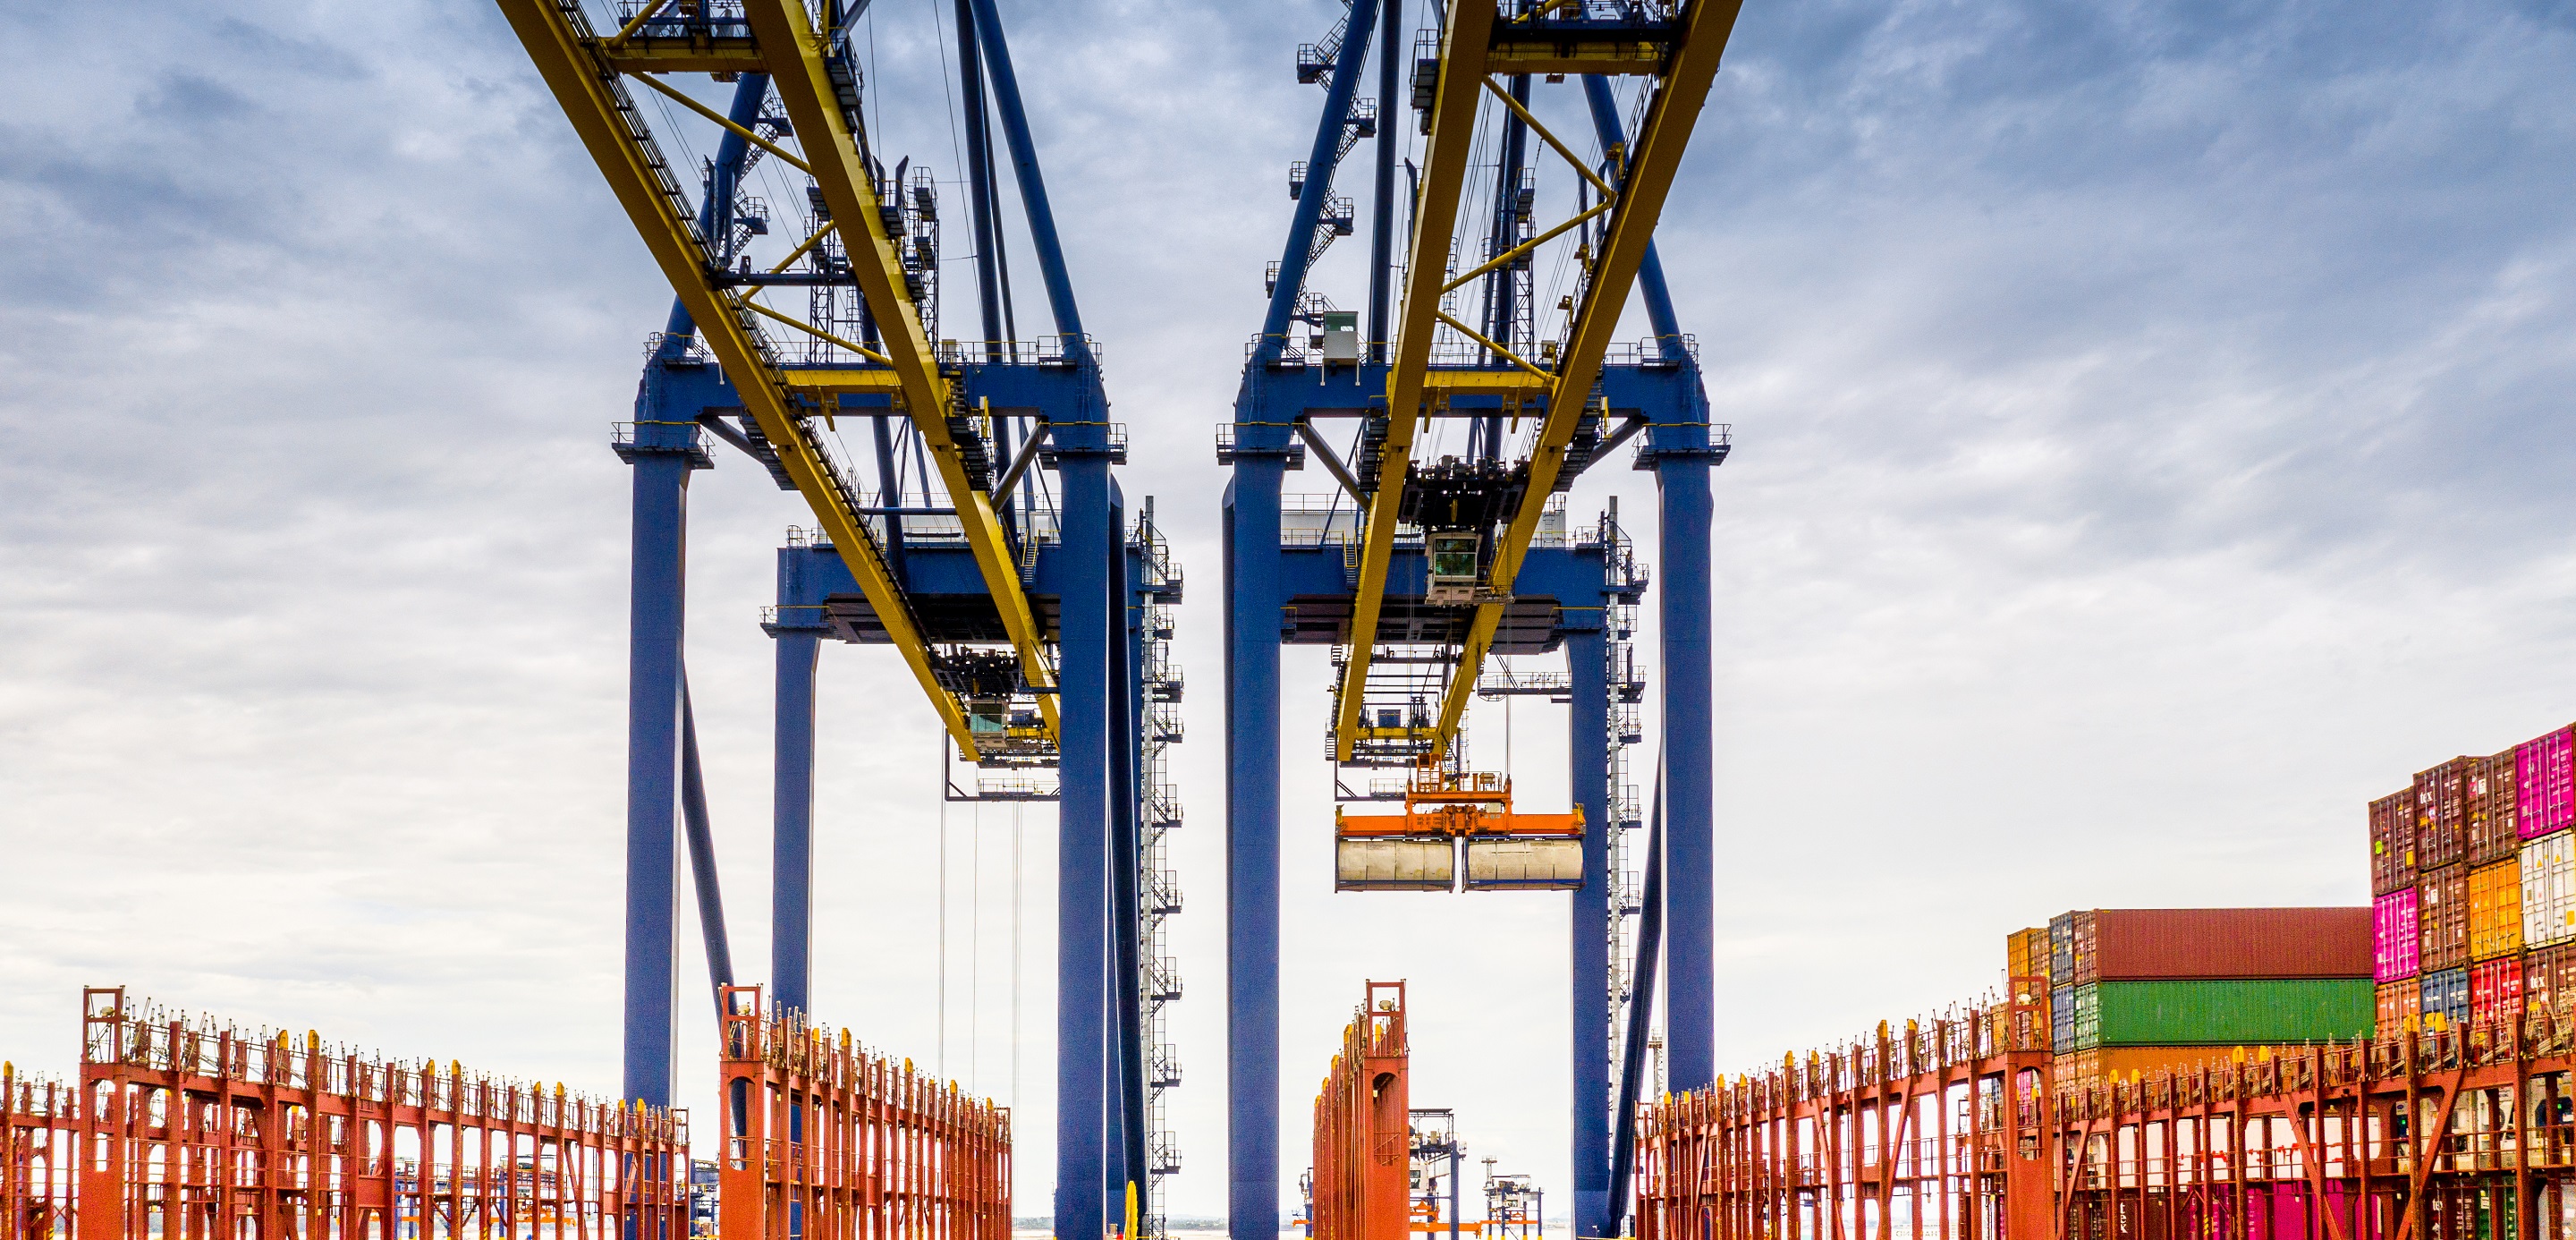 unloading crane in cargo ship terminal